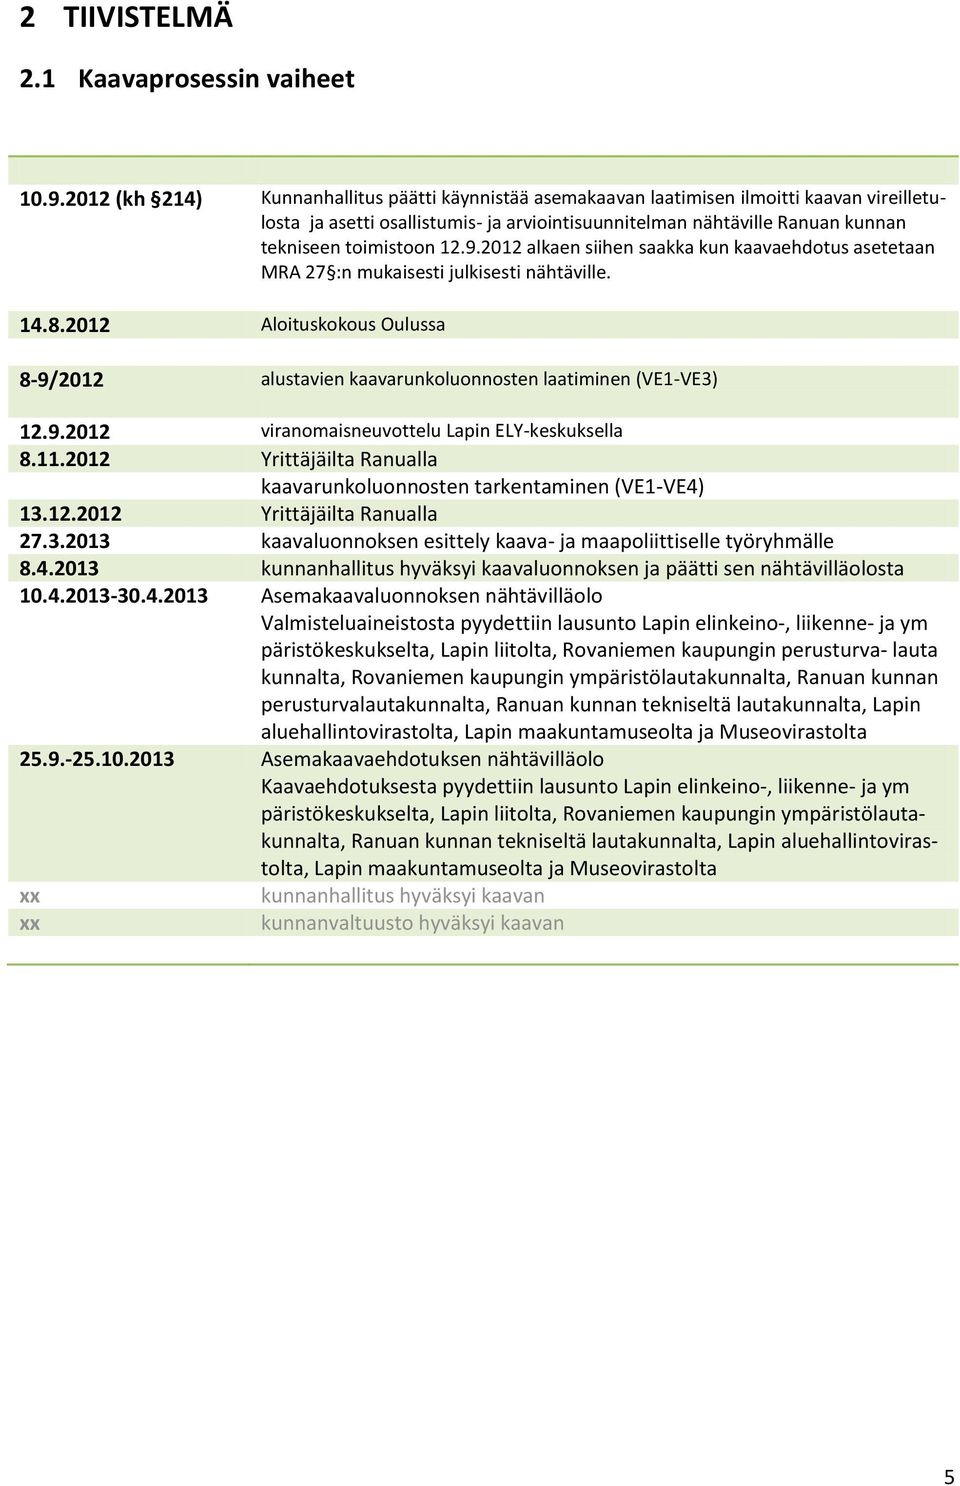 9.2012 alkaen siihen saakka kun kaavaehdotus asetetaan MRA 27 :n mukaisesti julkisesti nähtäville. 14.8.2012 Aloituskokous Oulussa 8-9/2012 alustavien kaavarunkoluonnosten laatiminen (VE1-VE3) 12.9.2012 viranomaisneuvottelu Lapin ELY-keskuksella 8.